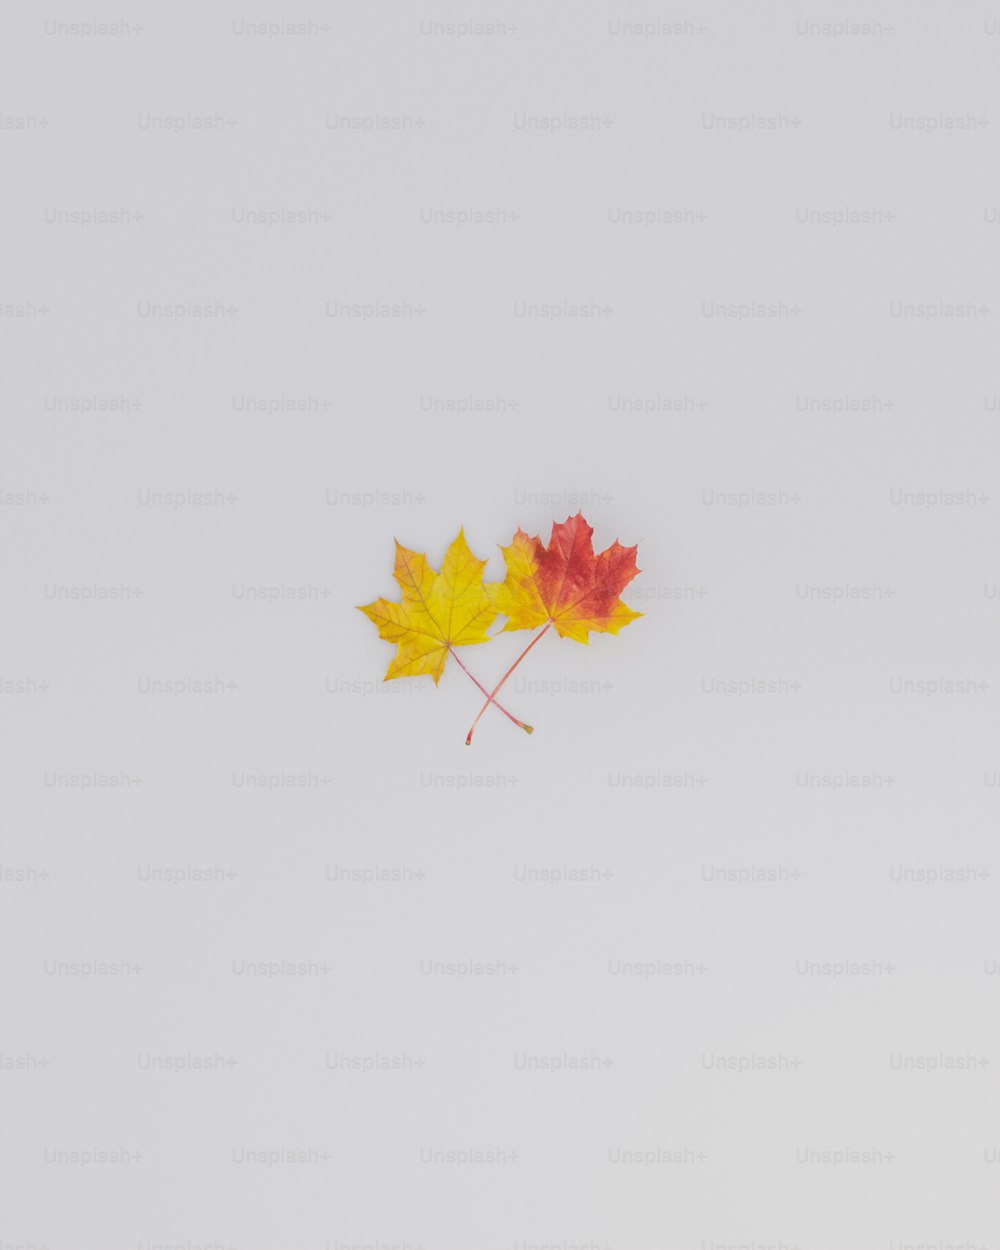 空中に浮かぶカエデの葉のペア